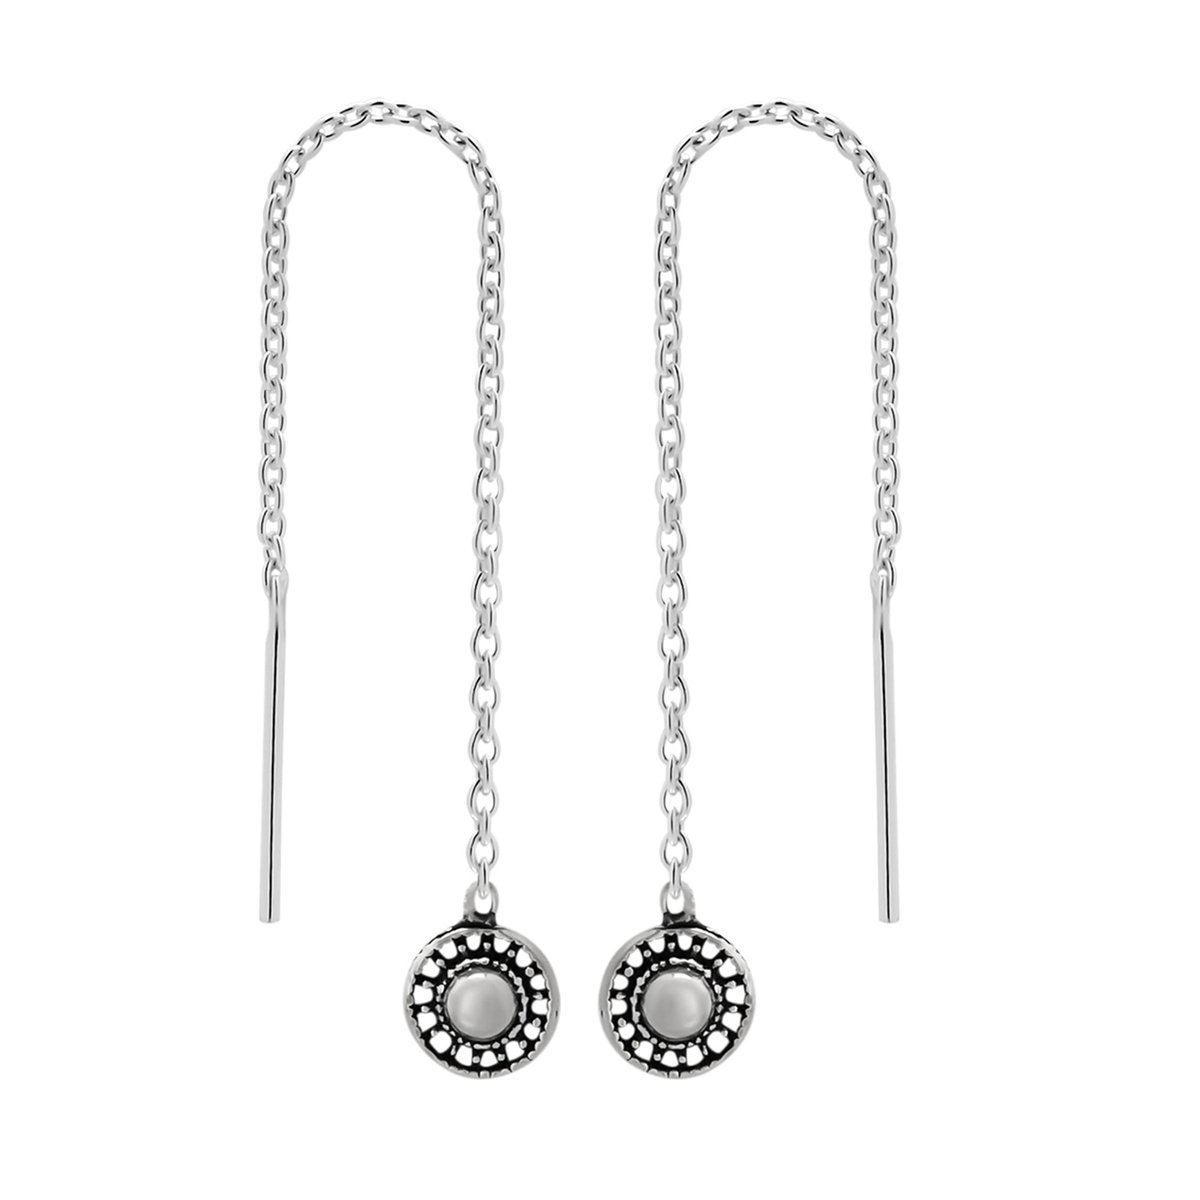 Zilveren oorbellen | Chain oorbellen | Zilveren chainoorbellen, Zeeuws knopje